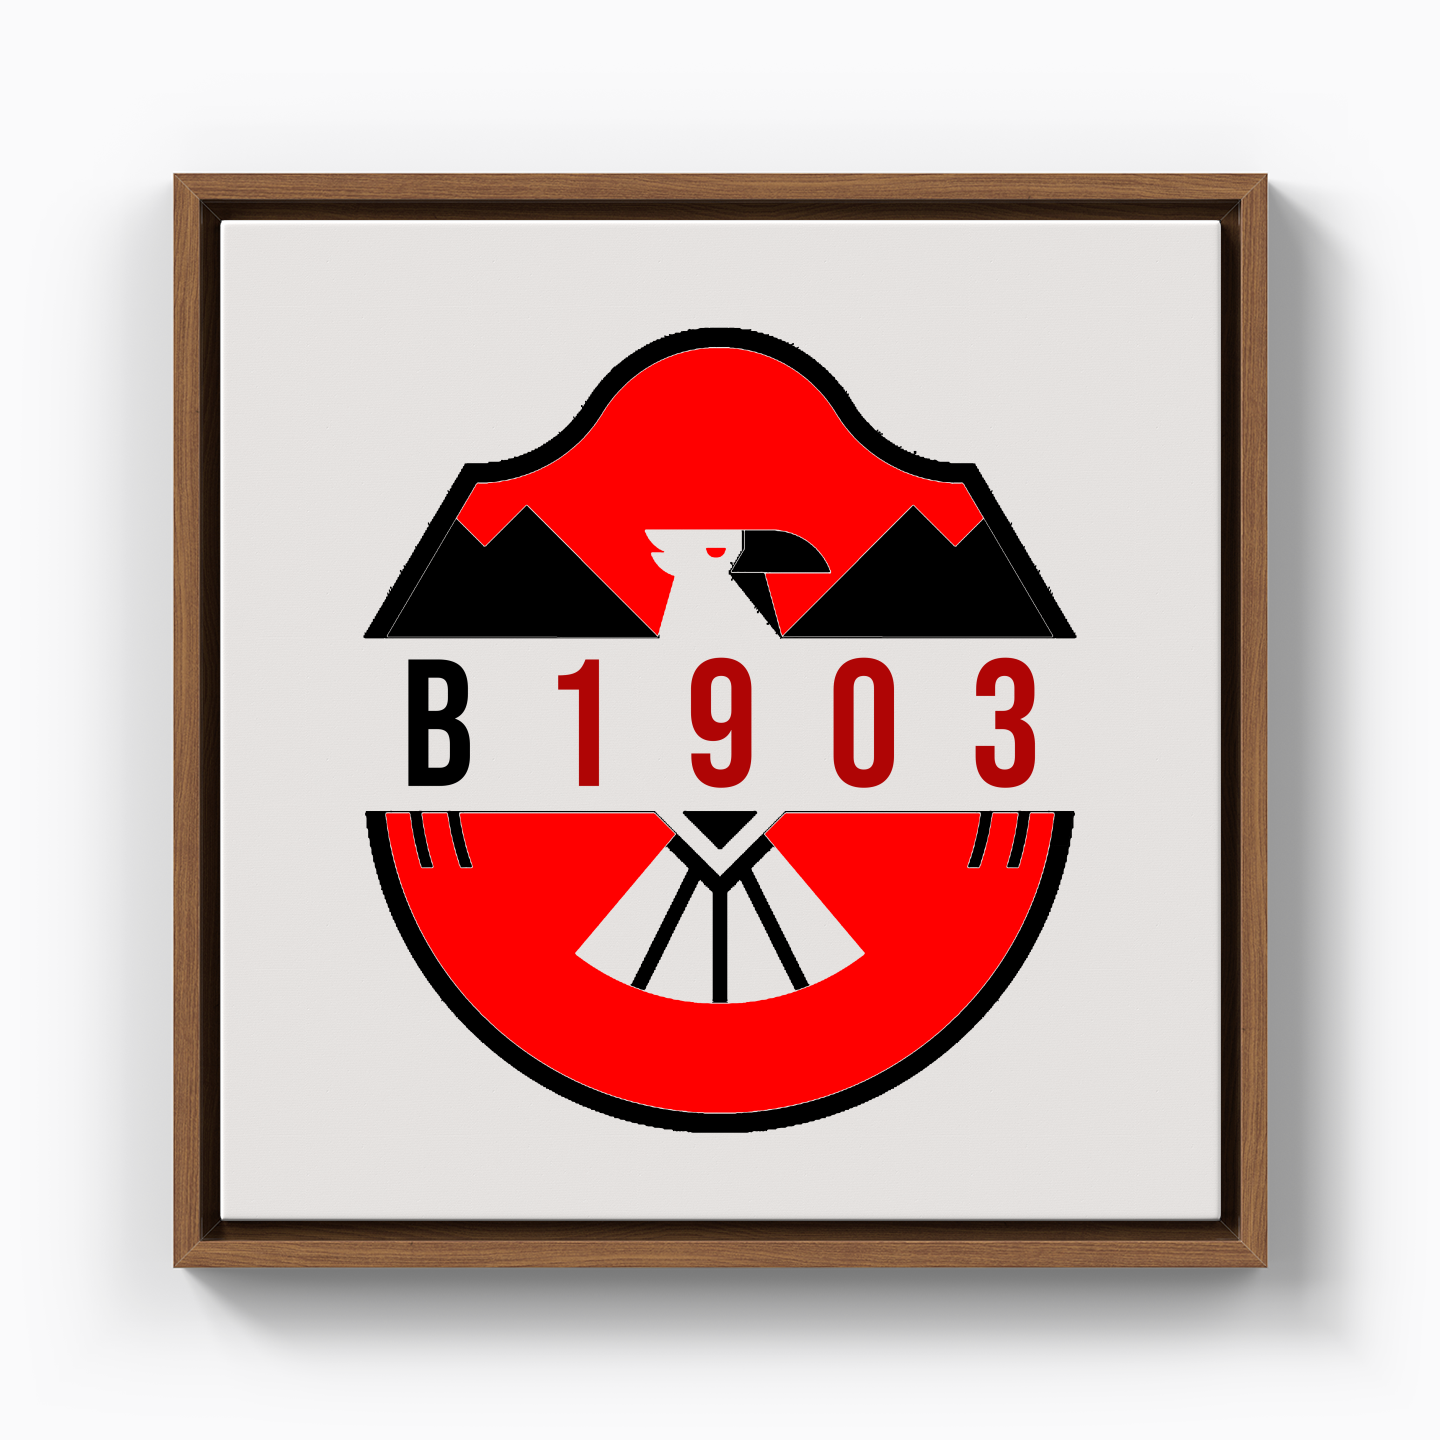 B1903 Beşiktaş - Kanvas Tablo